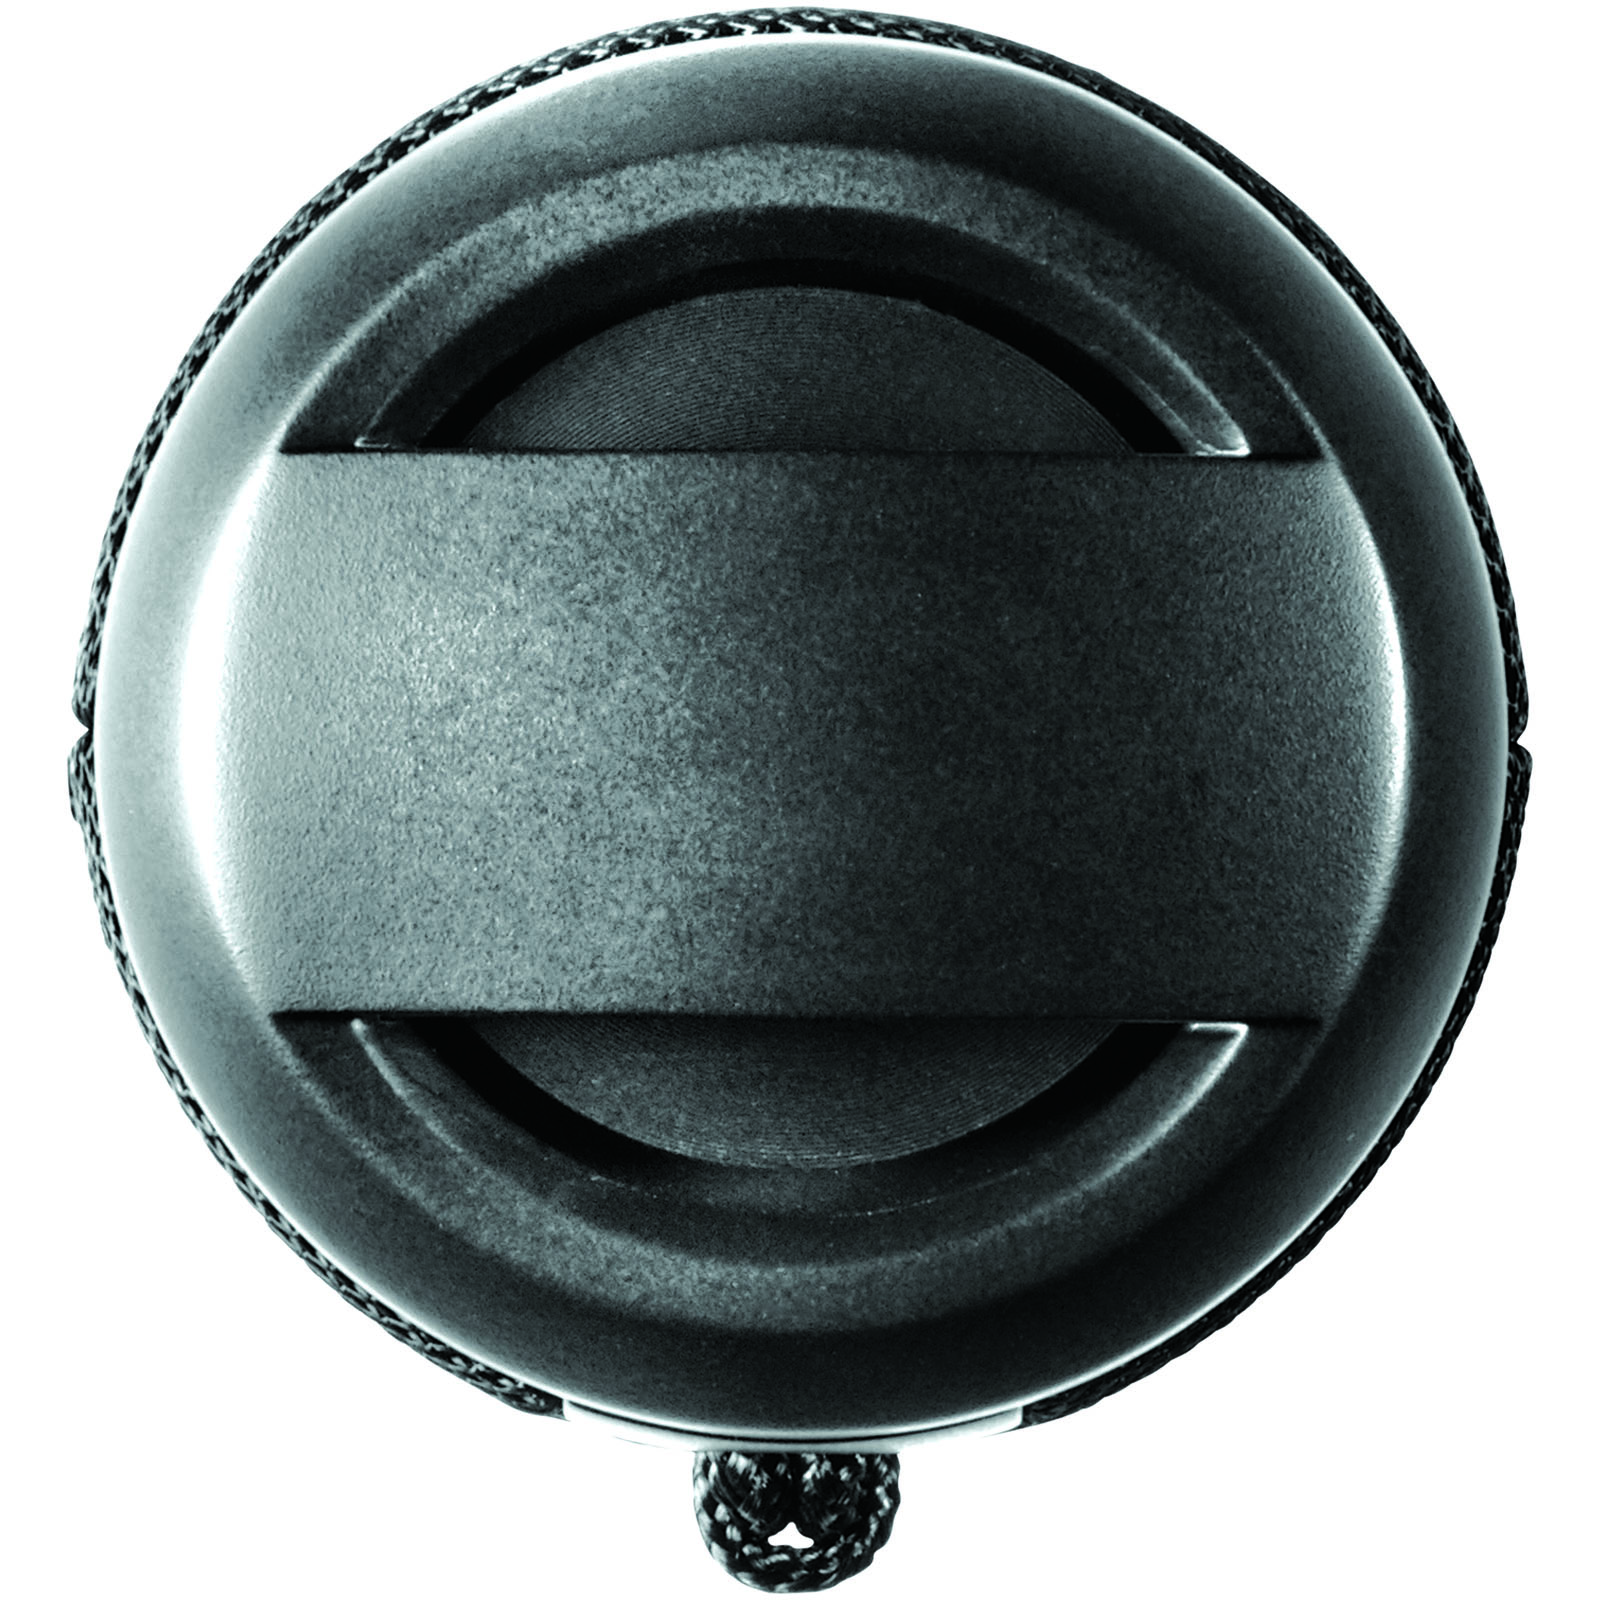 Advertising Speakers - Rugged fabric waterproof Bluetooth® speaker - 2